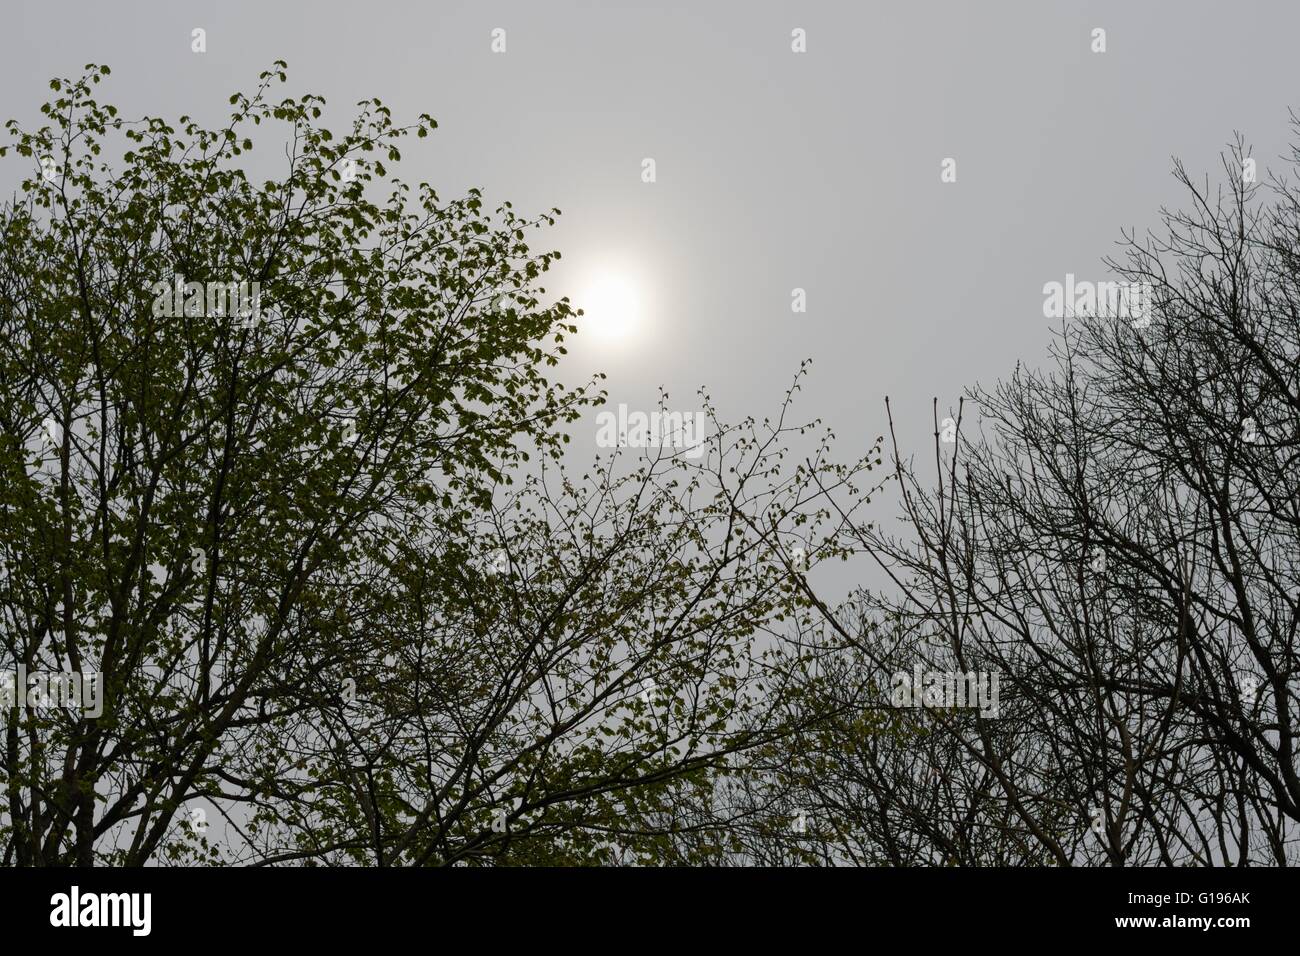 Wych Elm, Ulmus glabra trees in Spring in hazy misty sunshine, Wales, UK Stock Photo